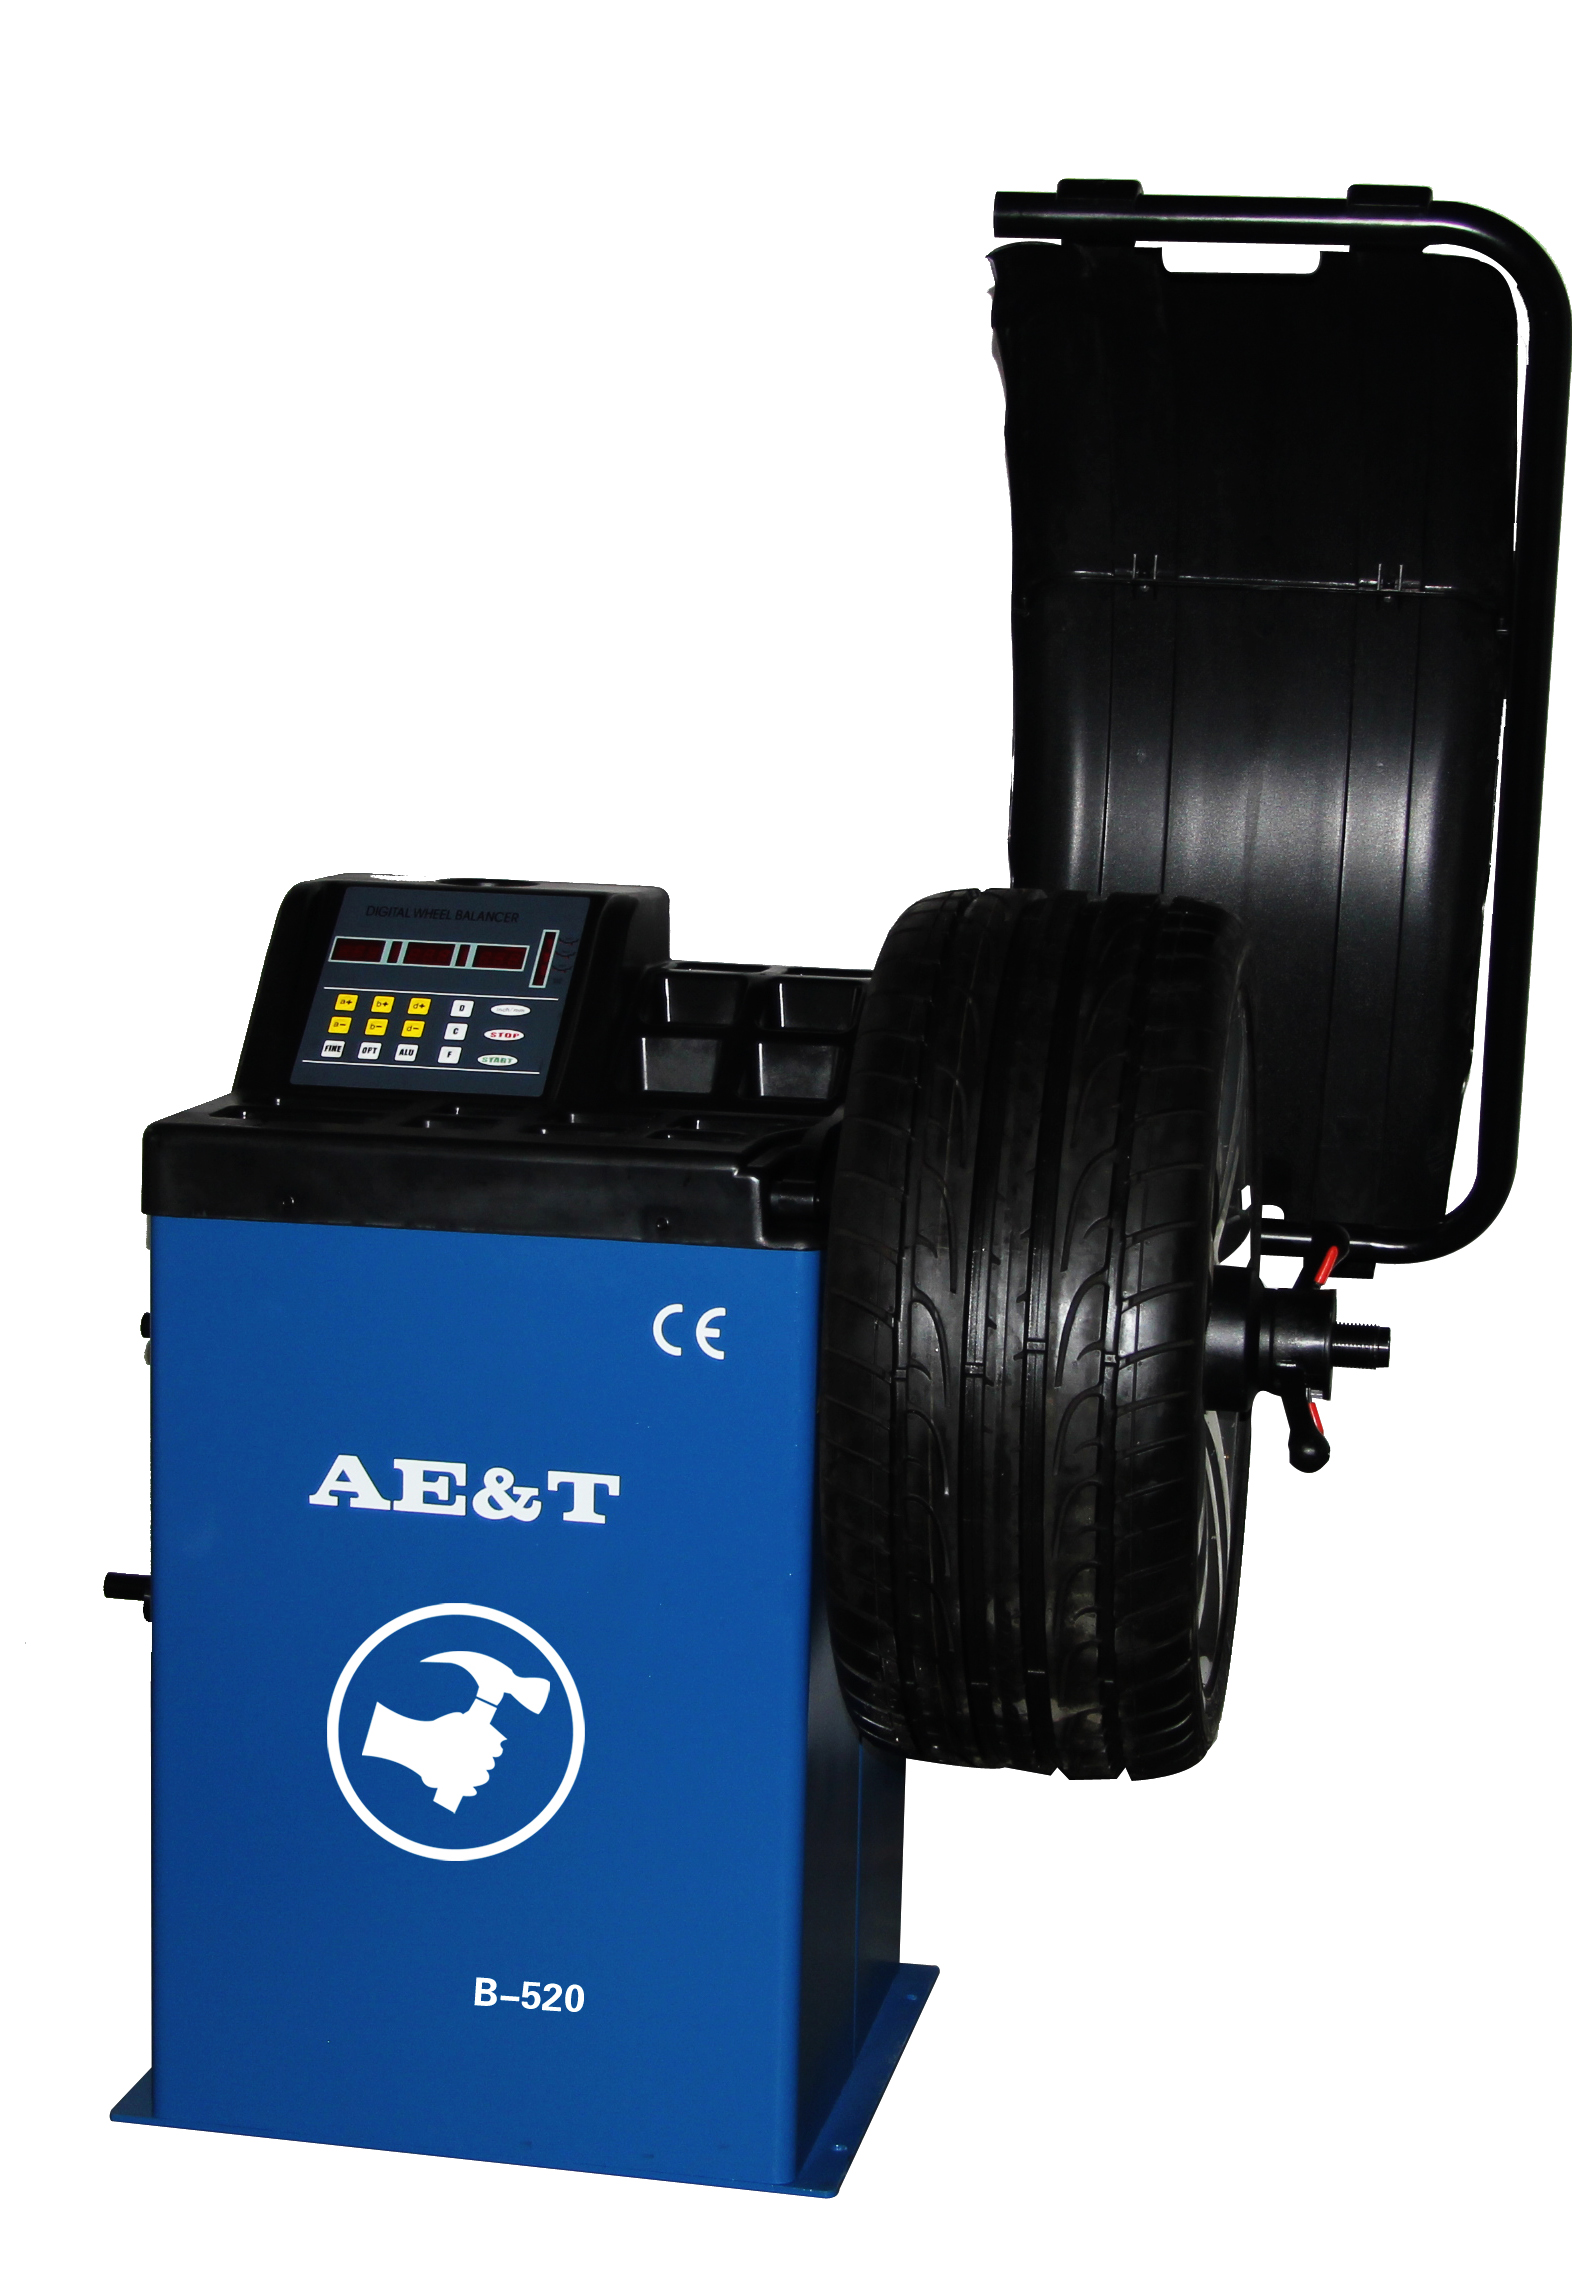 Балансировочный стенд AE&T В-820 для литых колес, автоввод 2 параметров